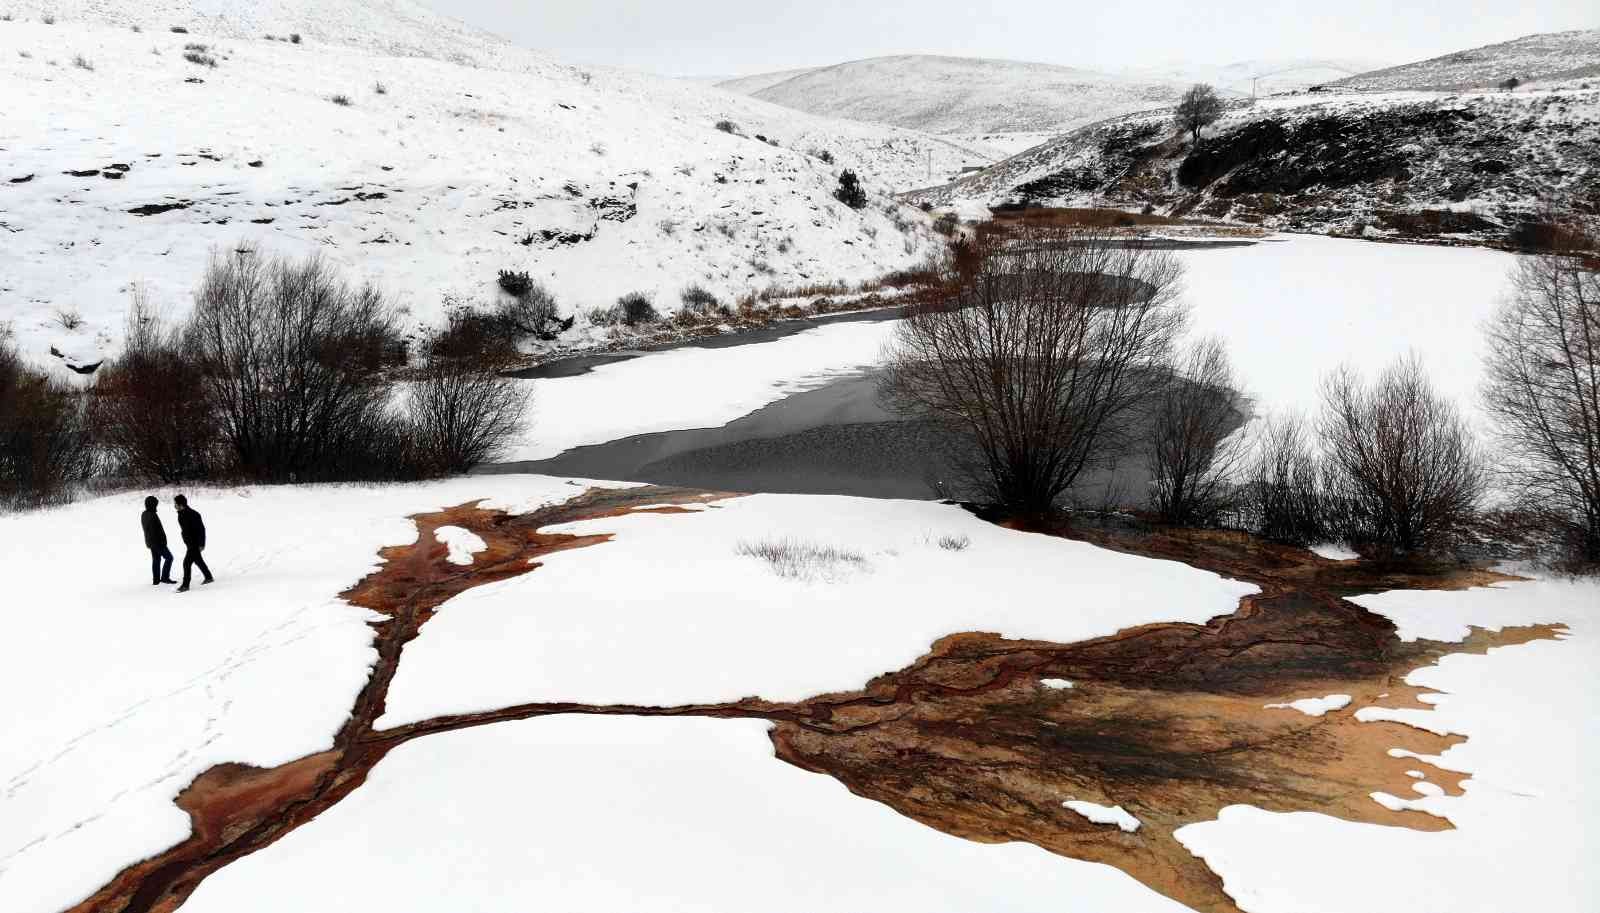 Otlukbeli Gölü: Dünya çapında eşsiz bir göl #erzincan